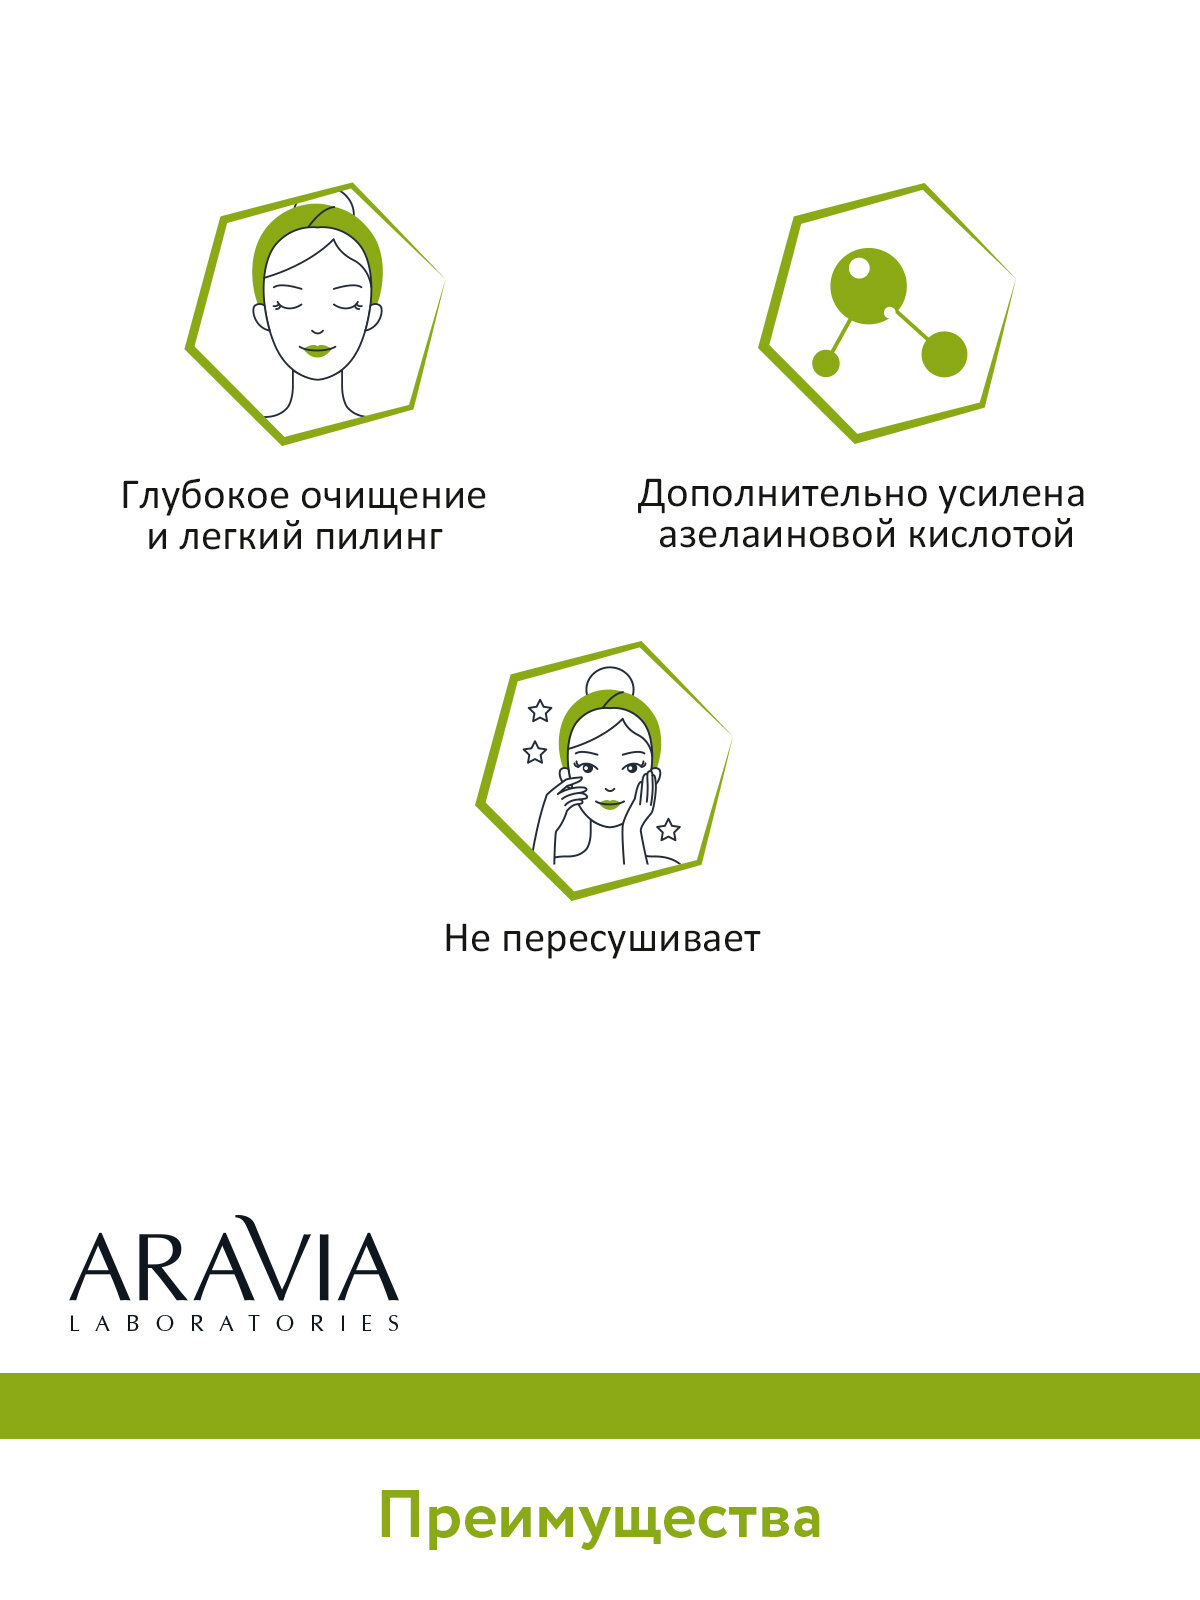 ARVIA Энзимная пудра для умывания с азелаиновой кислотой Anti-Acne Enzyme Powder, 150 мл